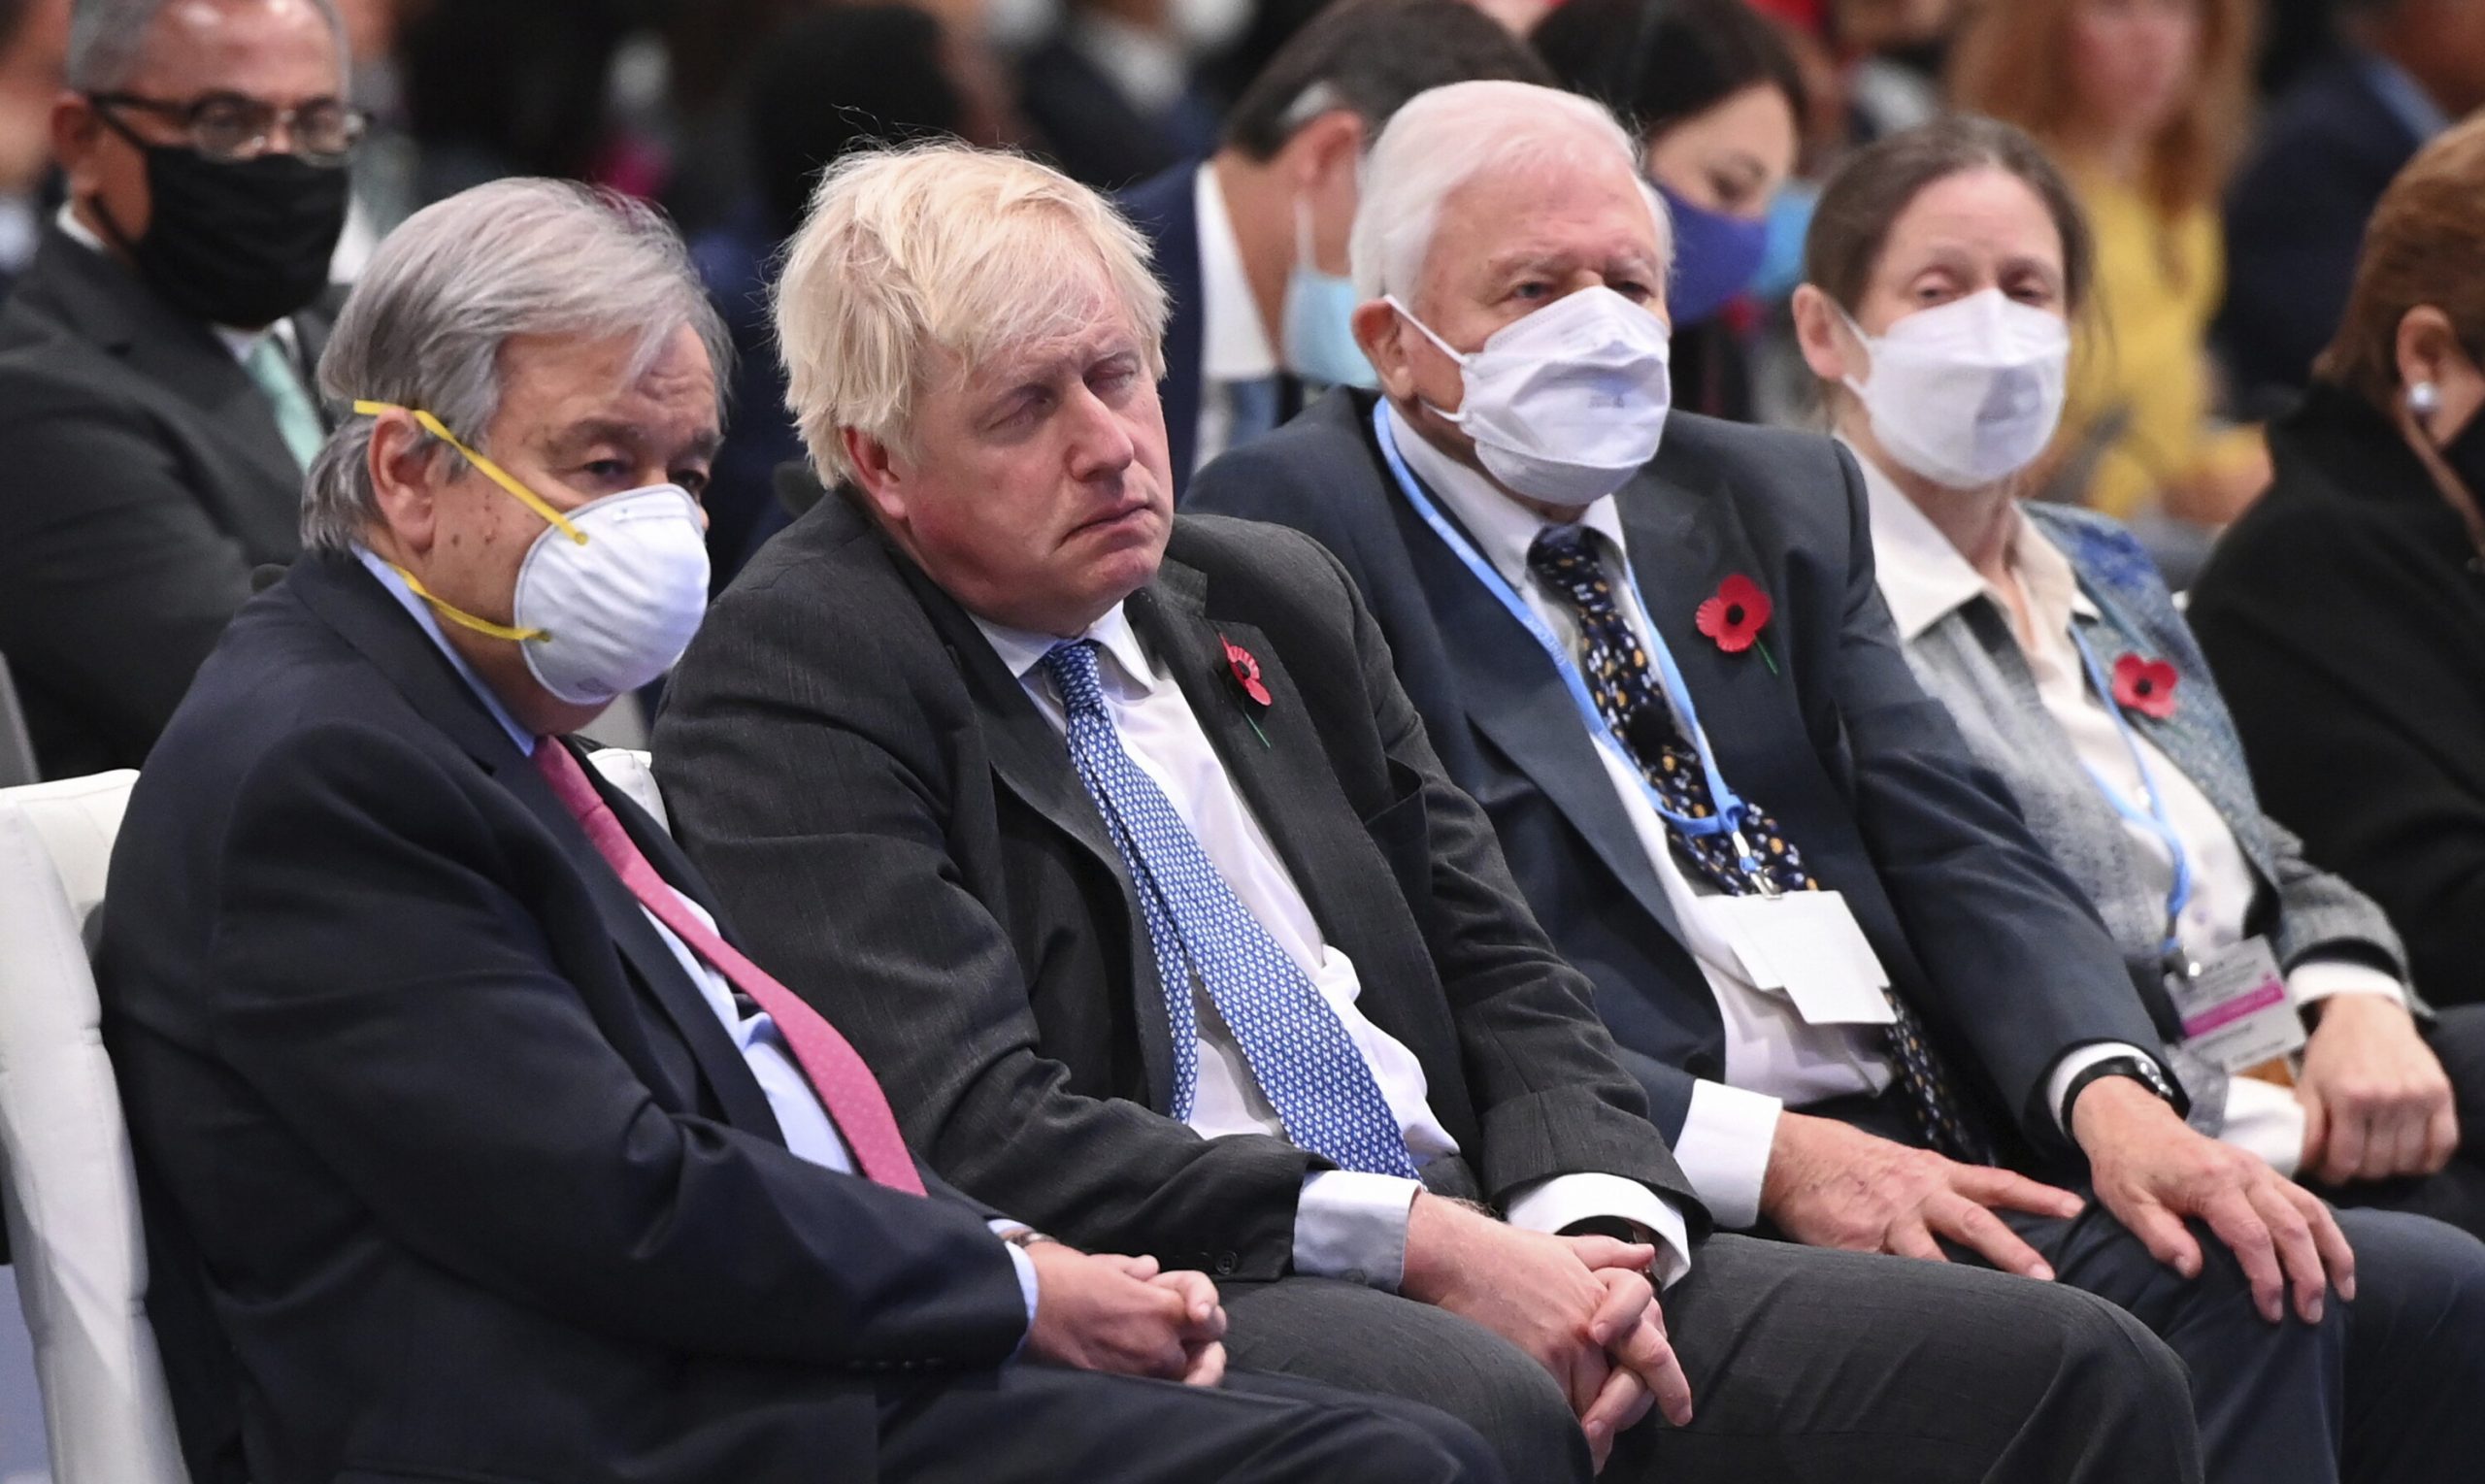 Boris Johnson este criticat pentru că nu a purtat mască la summit-ul climatic, deși stătea lângă Sir David Attenborough, în vârstă de 95 de ani